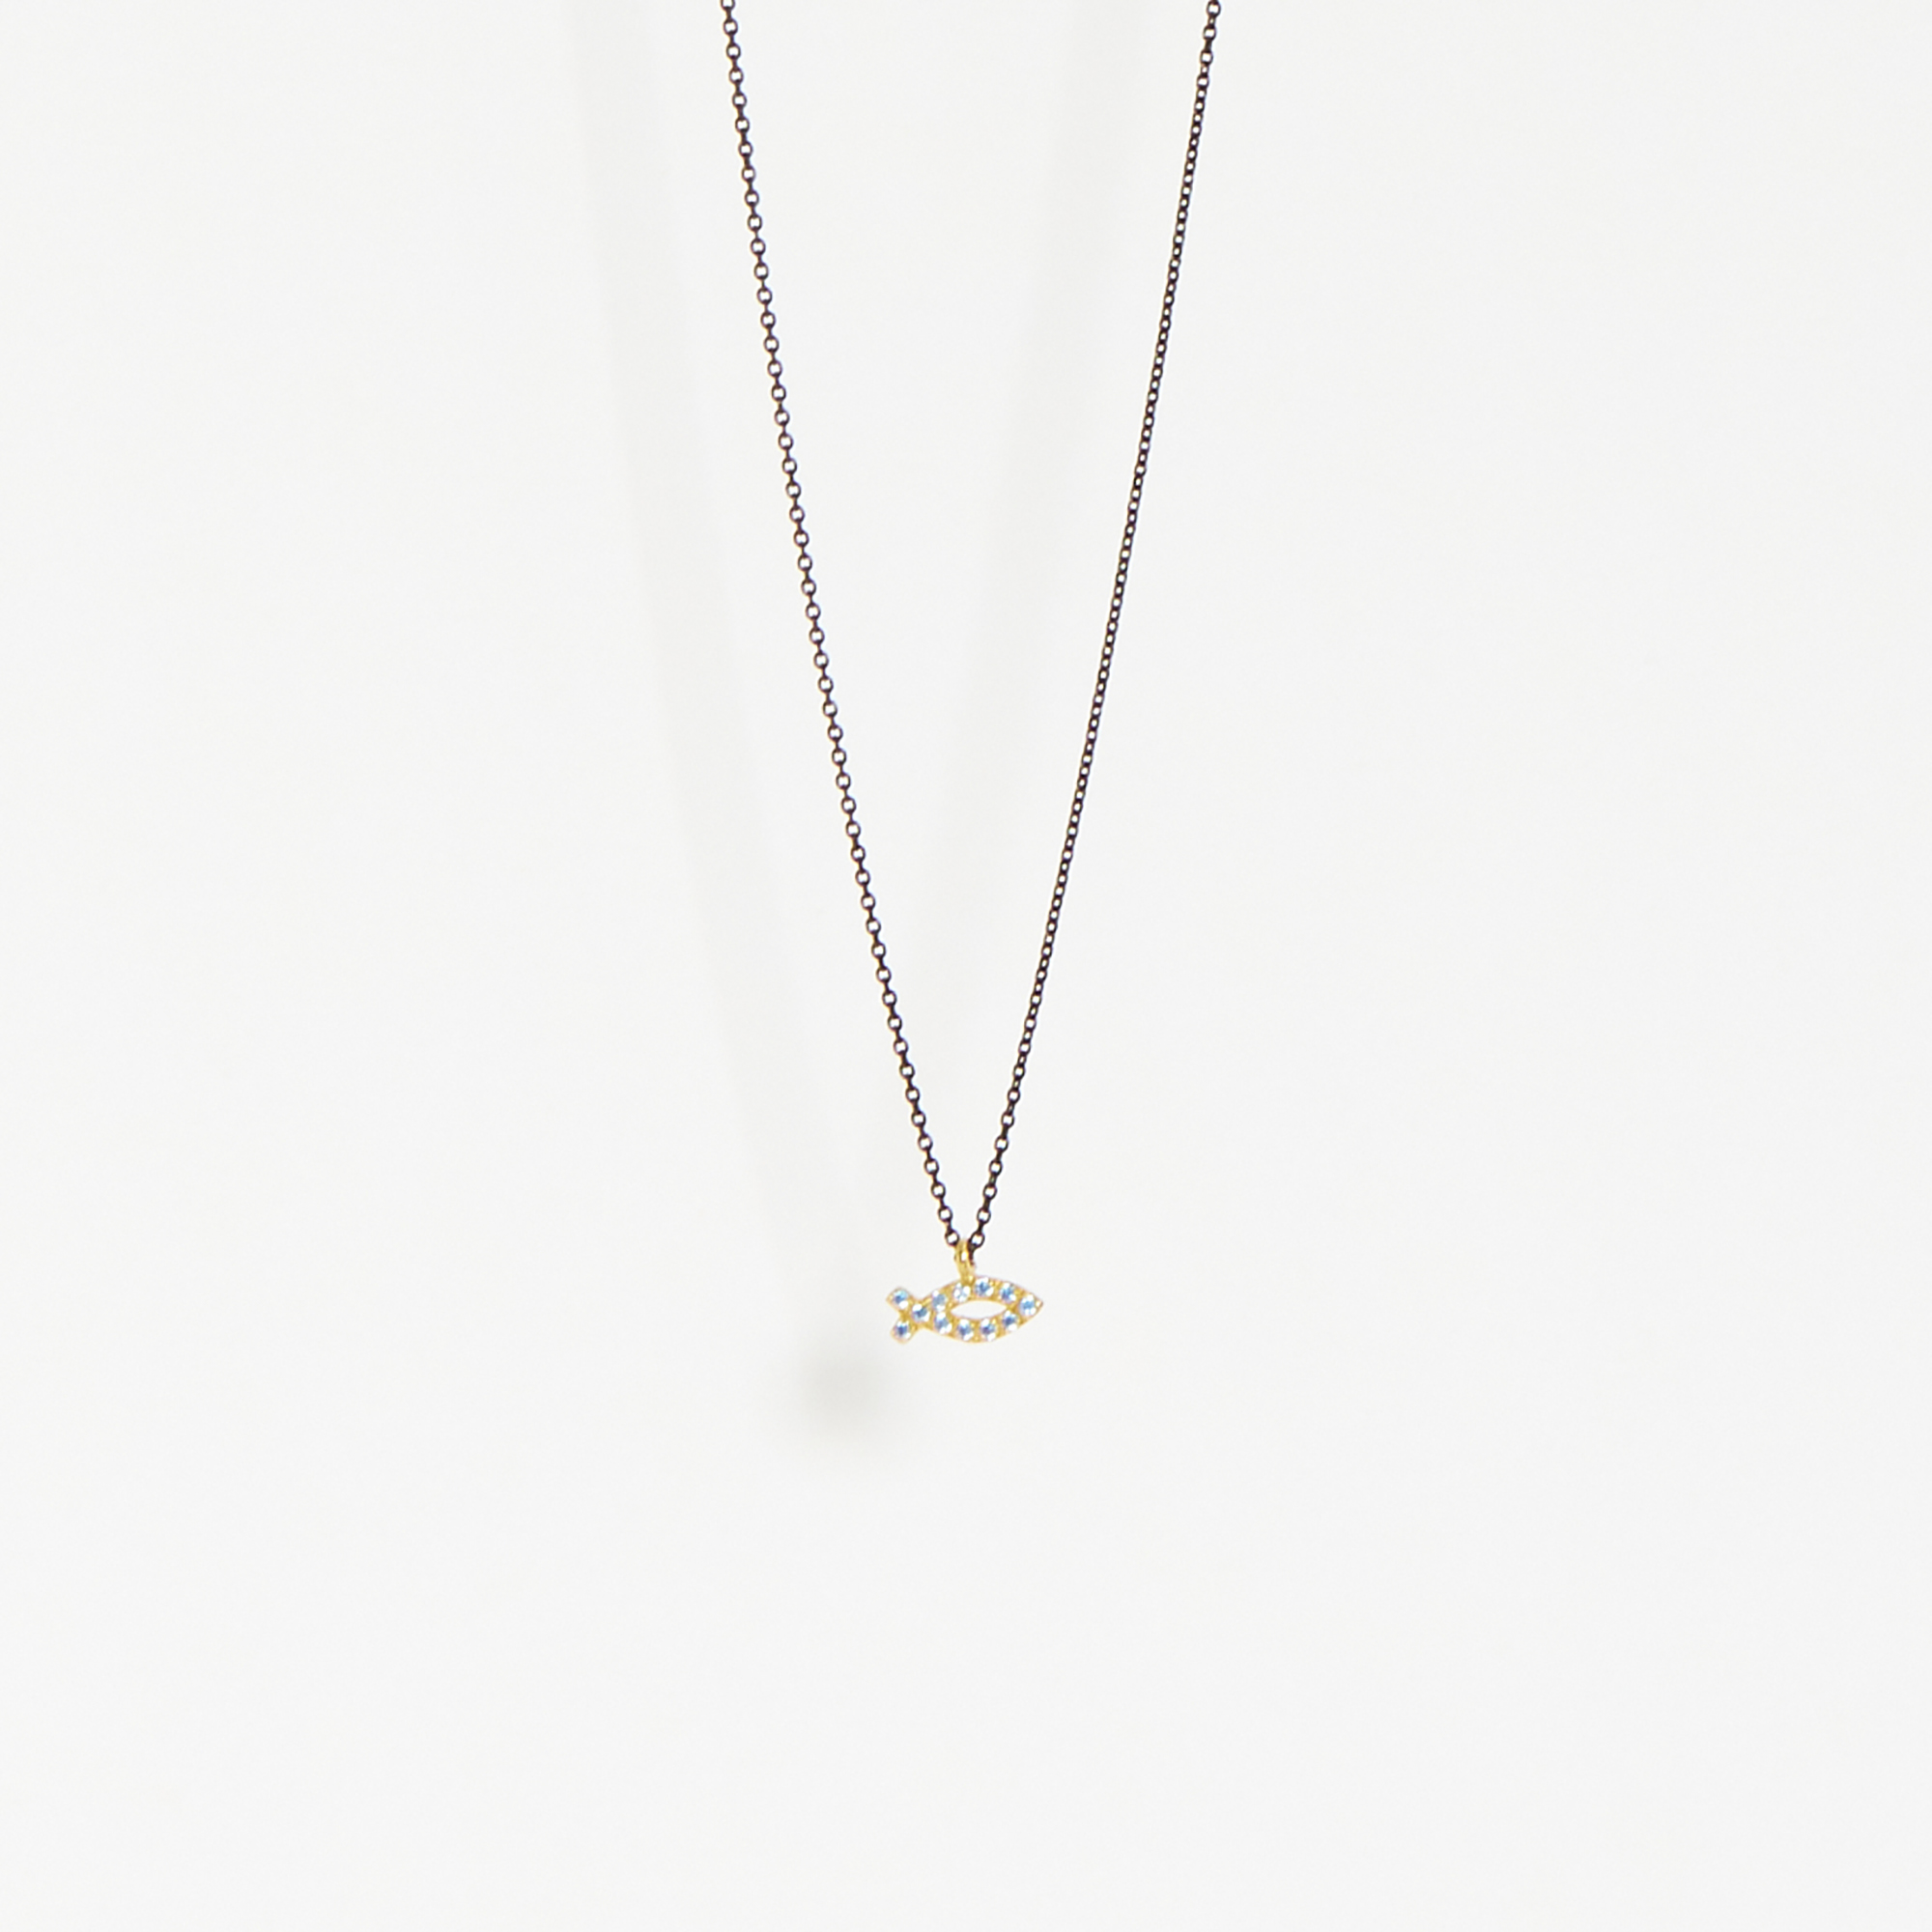 GoldFish Necklace - 